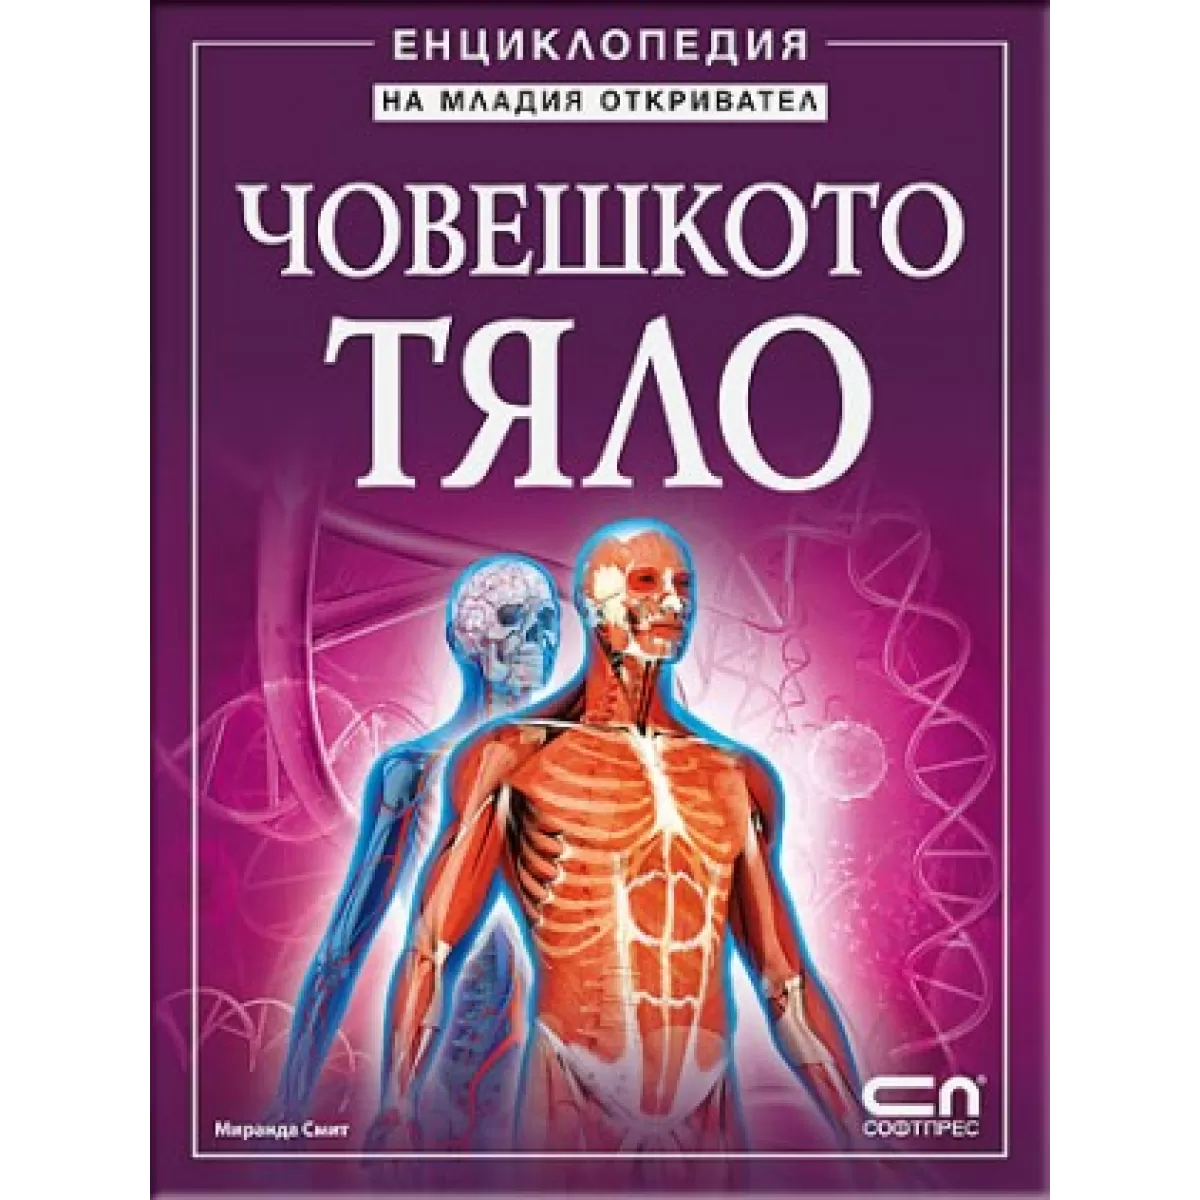 Човешкото тяло - Енциклопедия на младия откривател